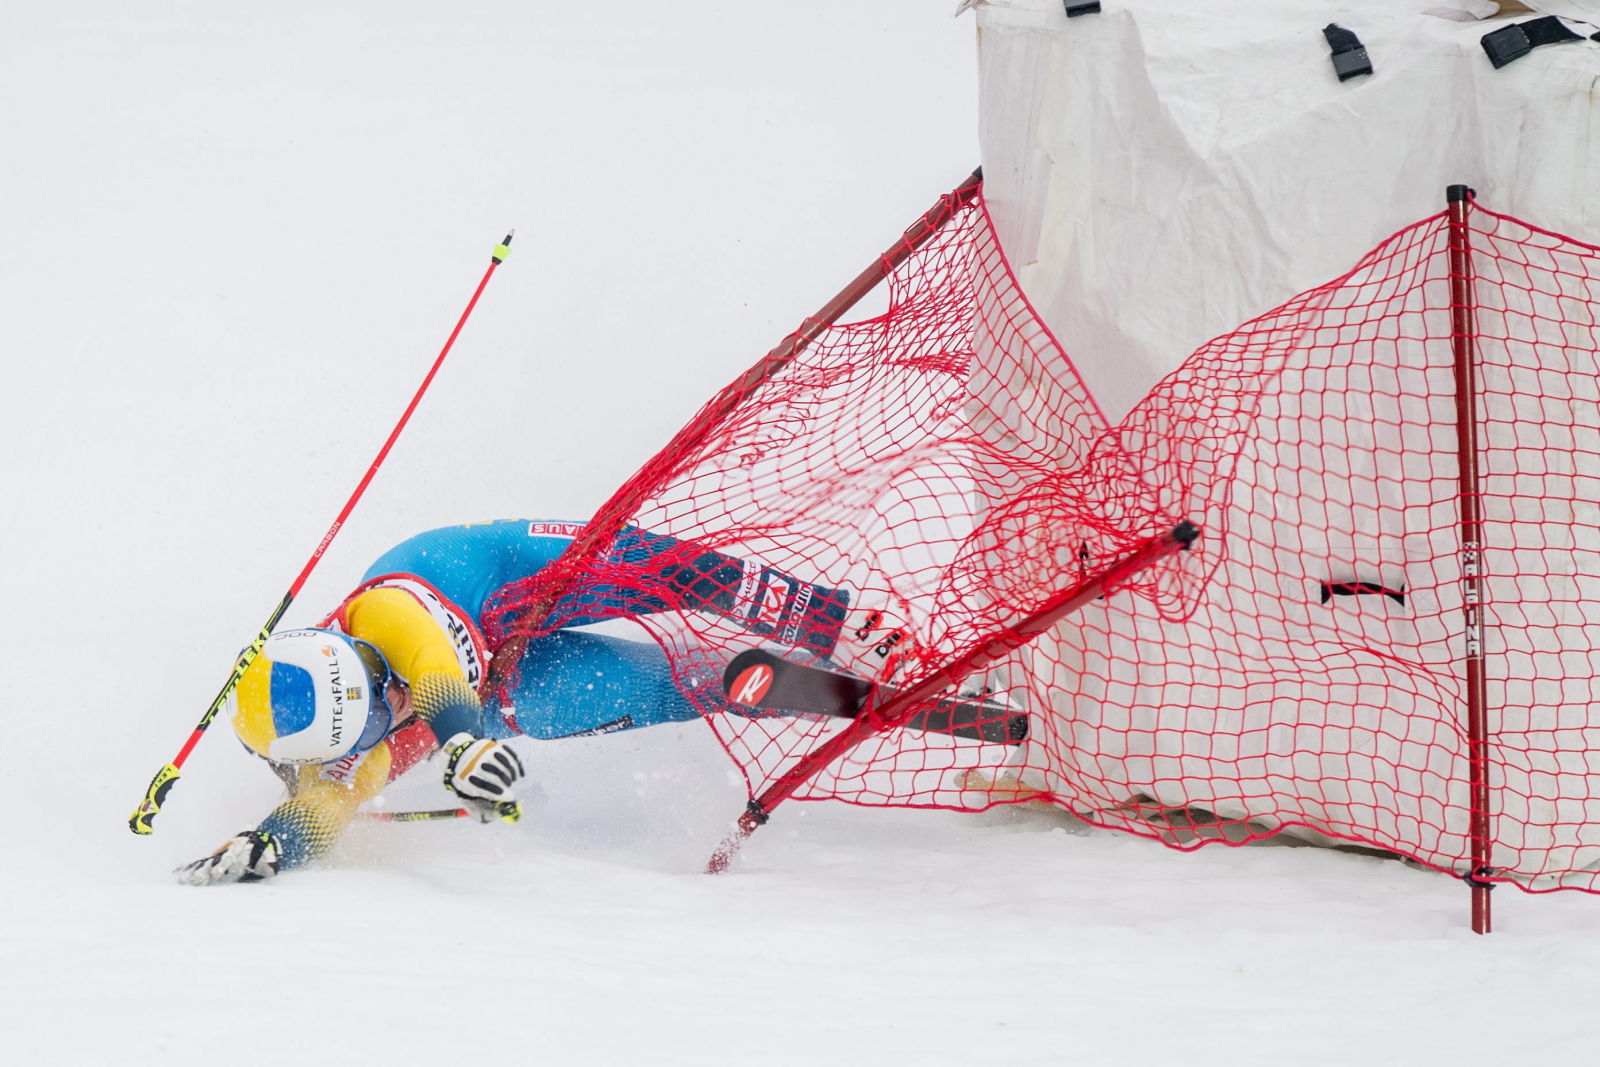 Upadek Marii Pietilae-Holmner w czasie zawodów Pucharu Świata w narciarstwie alpejskim.